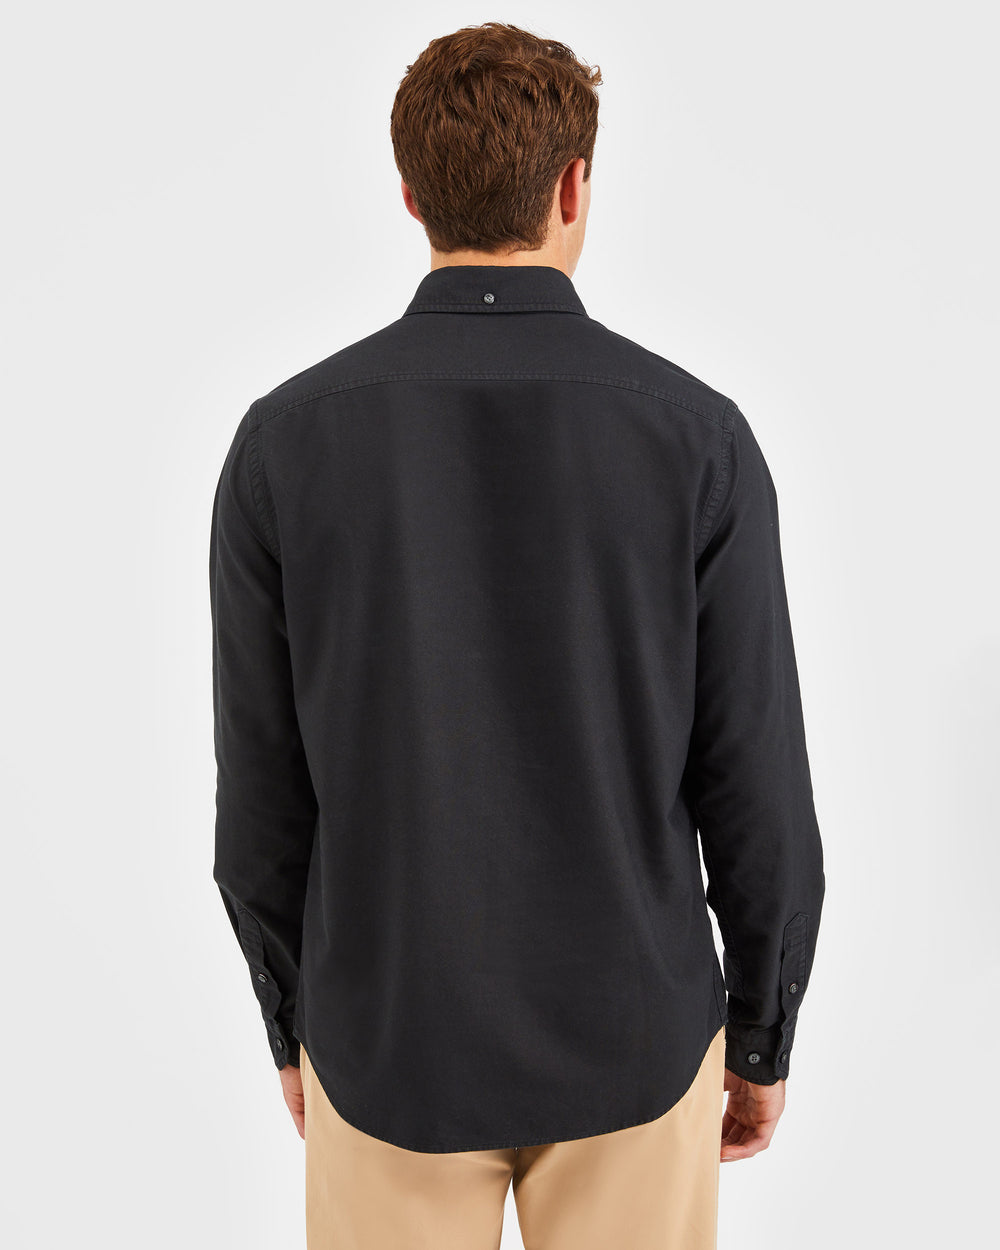 Beatnik Oxford Garment Dye Shirt - Washed Black - Ben Sherman